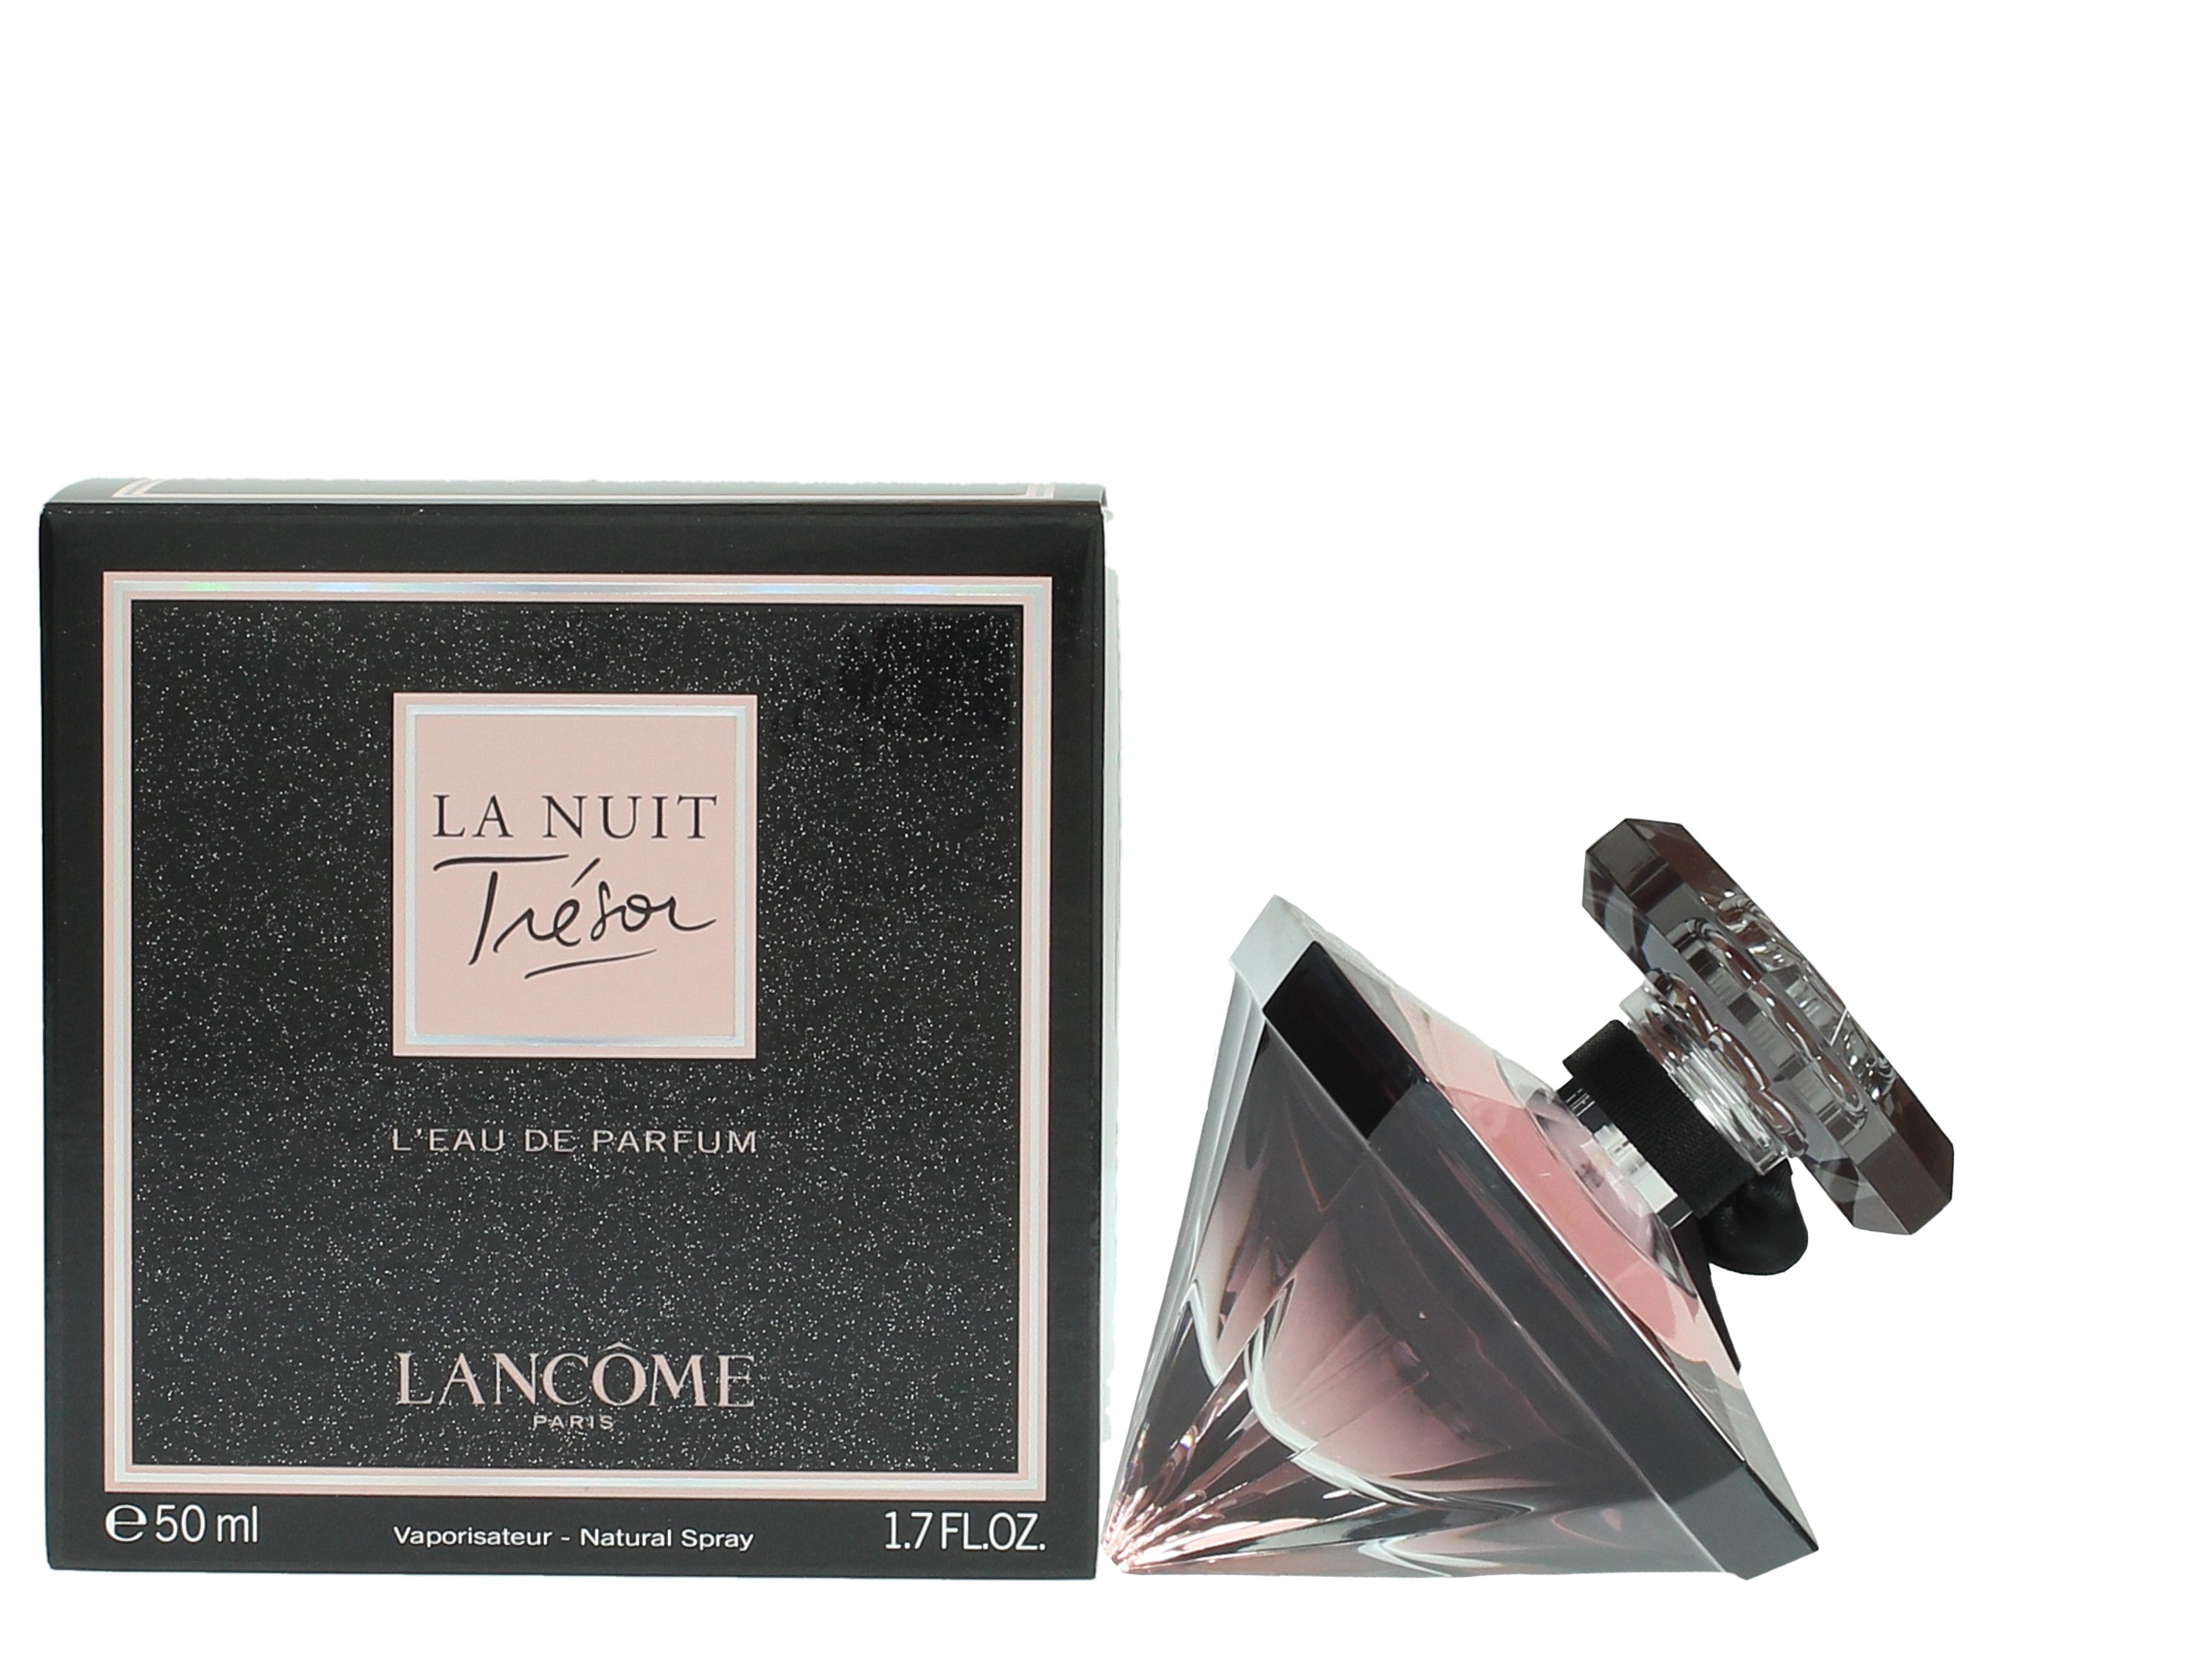 View Lancome La Nuit Tresor Eau de Parfum 50ml Spray information